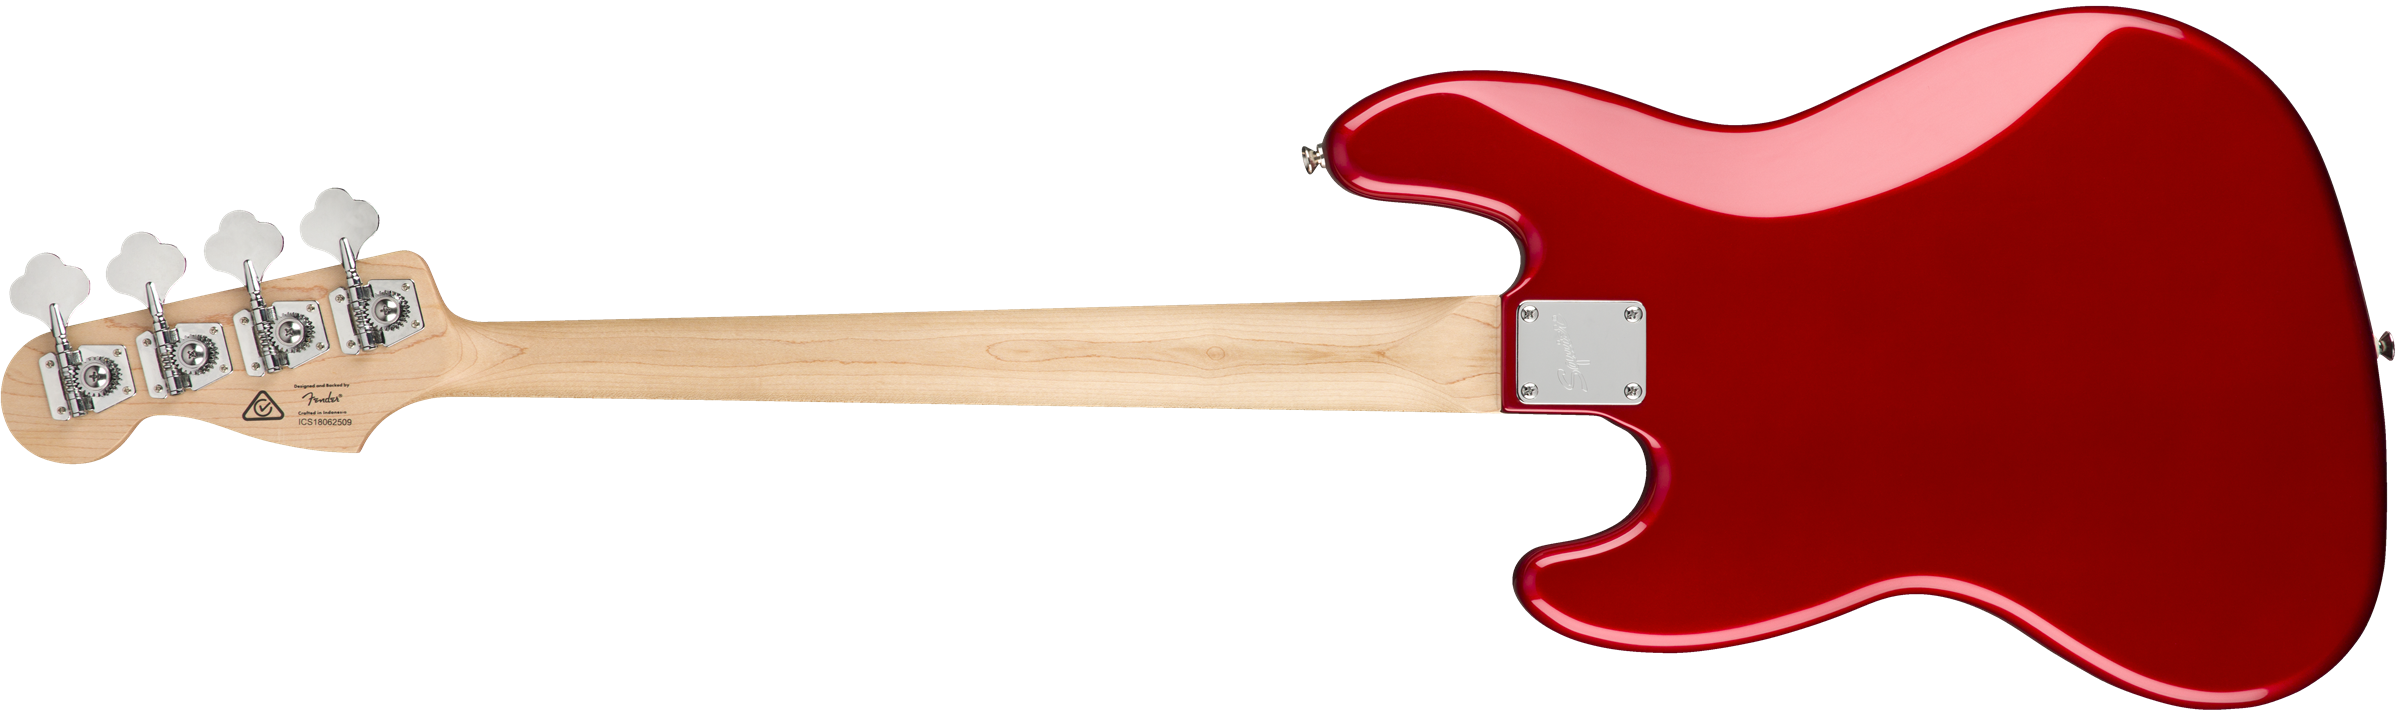 Squier Contemporary Jazz Bass Lau - Metallic Red - Bajo eléctrico de cuerpo sólido - Variation 1